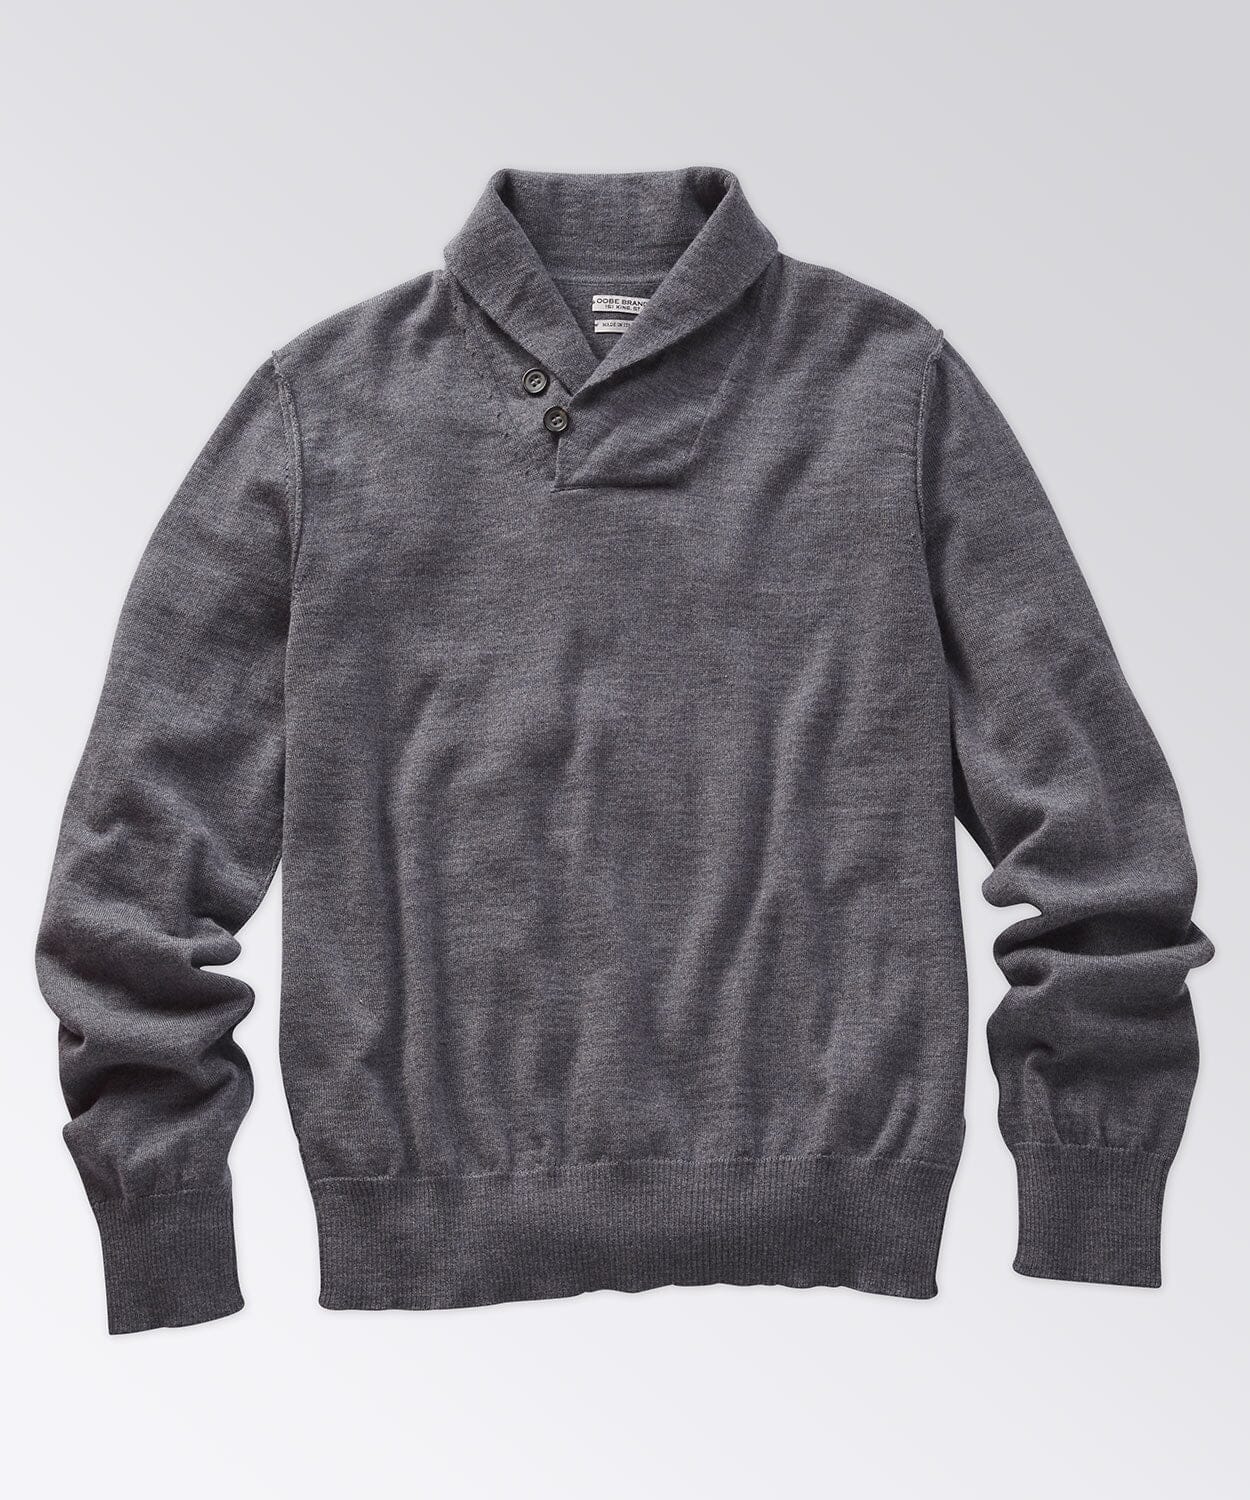 Fulton Shawl Collar Sweater Sweaters OOBE BRAND Grey Heather S 